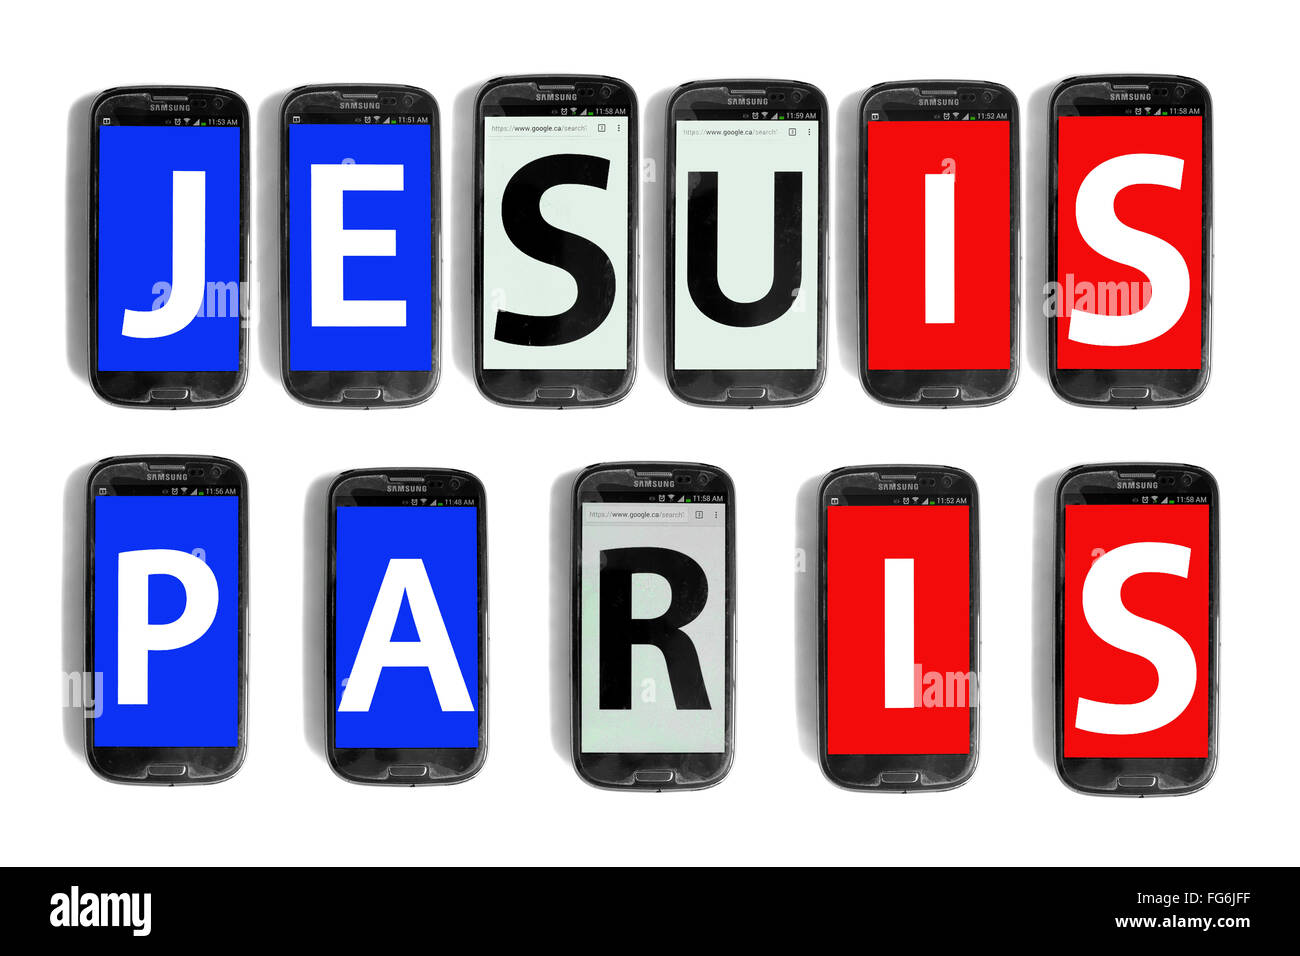 Je Suis Paris geschrieben am Smartphone Bildschirme vor weißem Hintergrund fotografiert. Stockfoto